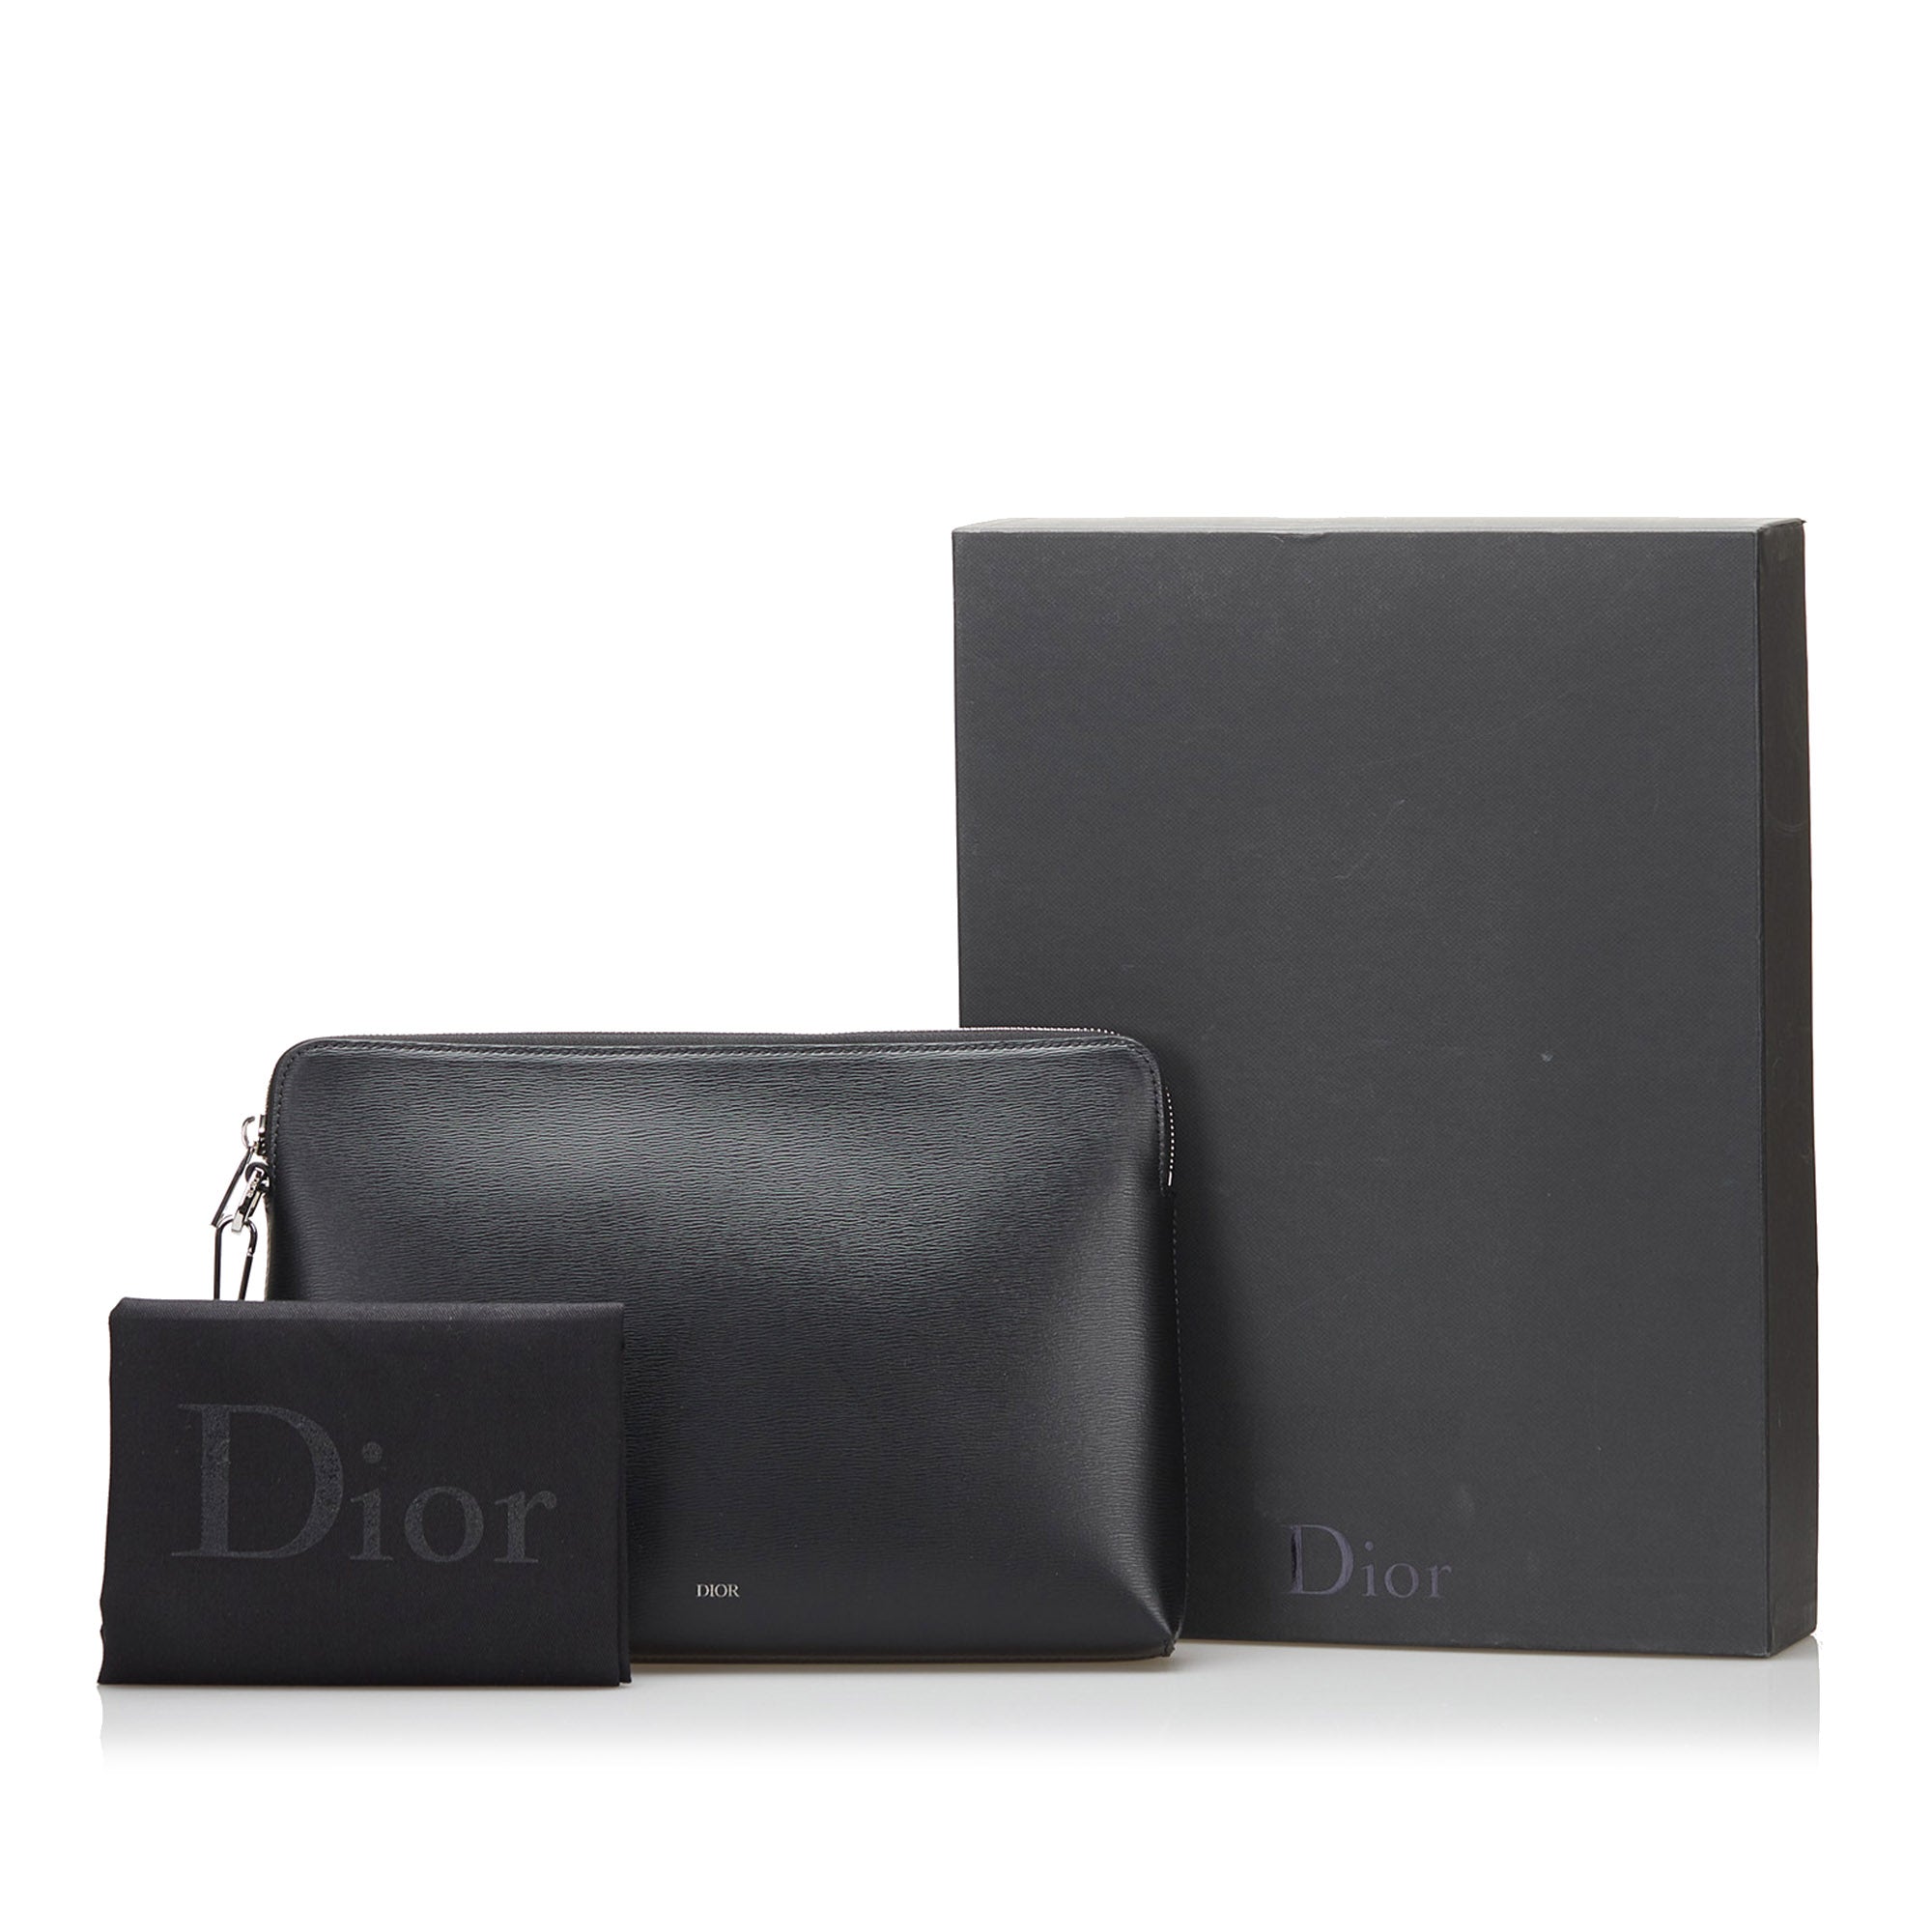 Dior Bag Cosmetic Bags  Mercari